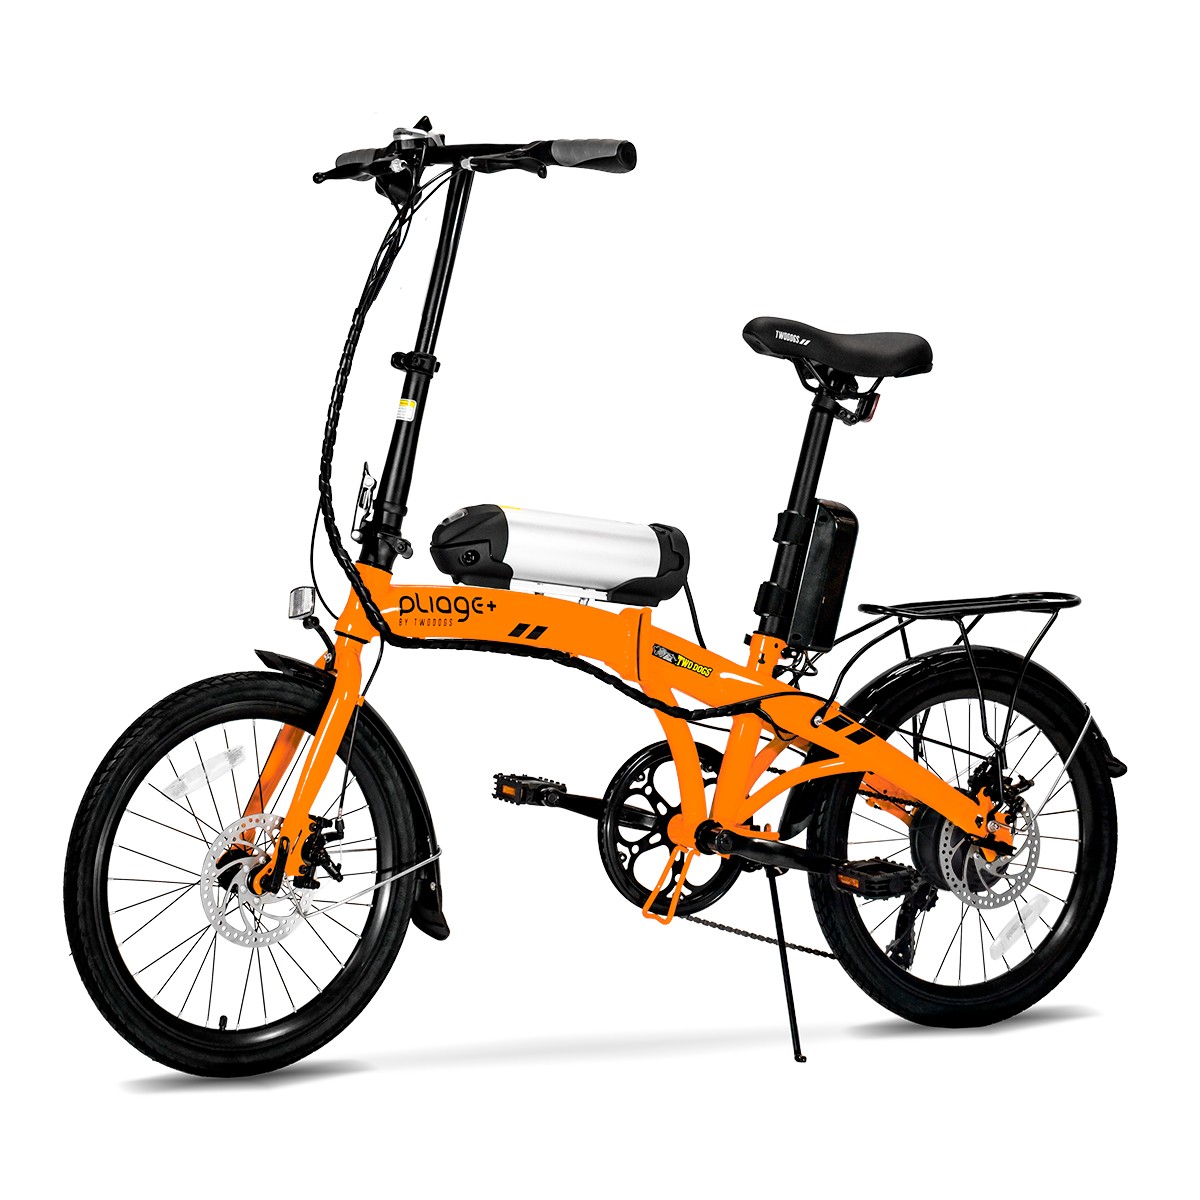 Bicicleta dobrável Two Dogs Pliage, uma das melhores bicicletas elétricas disponíveis no mercado